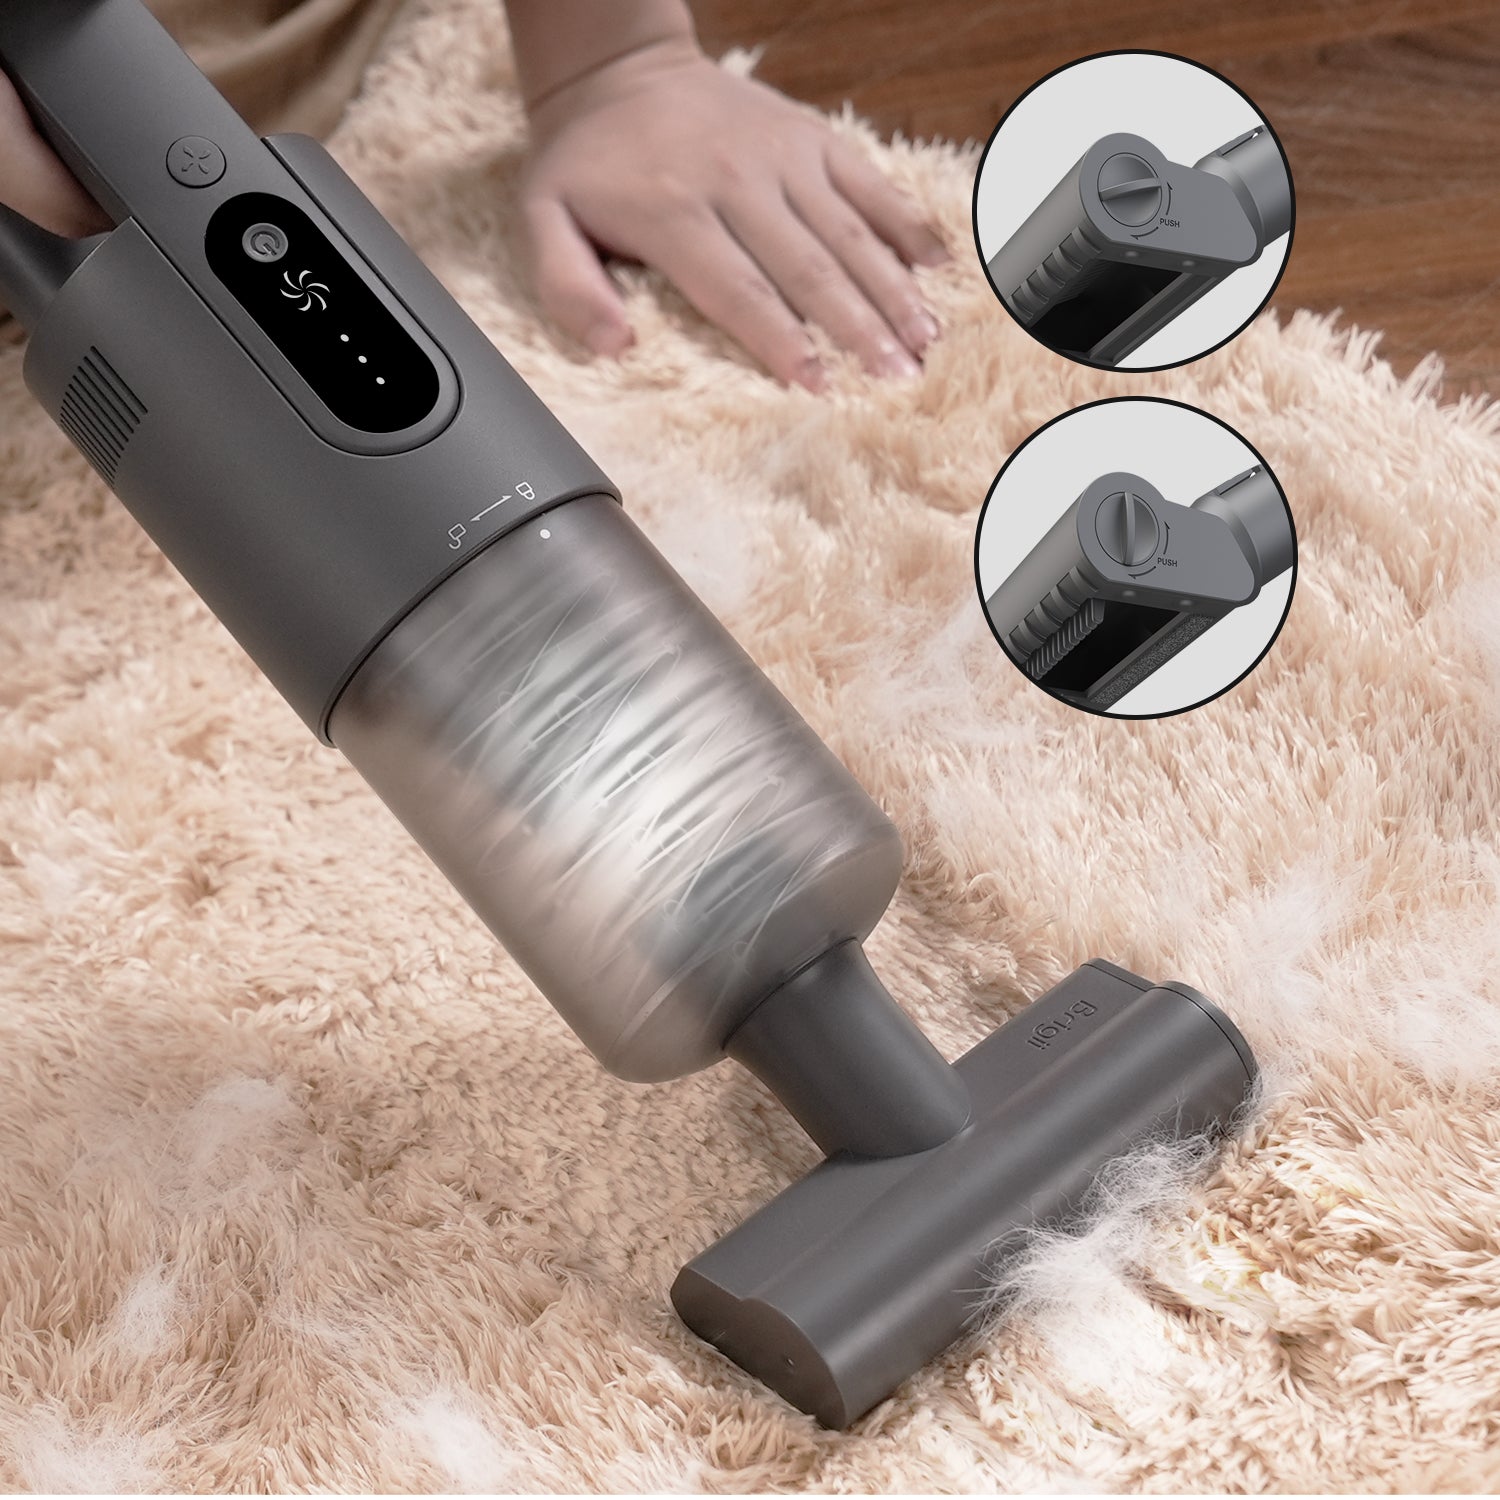 Brigii 3 in 1 Handheld Vacuum Cleaner, Cordless Car Vacuum for